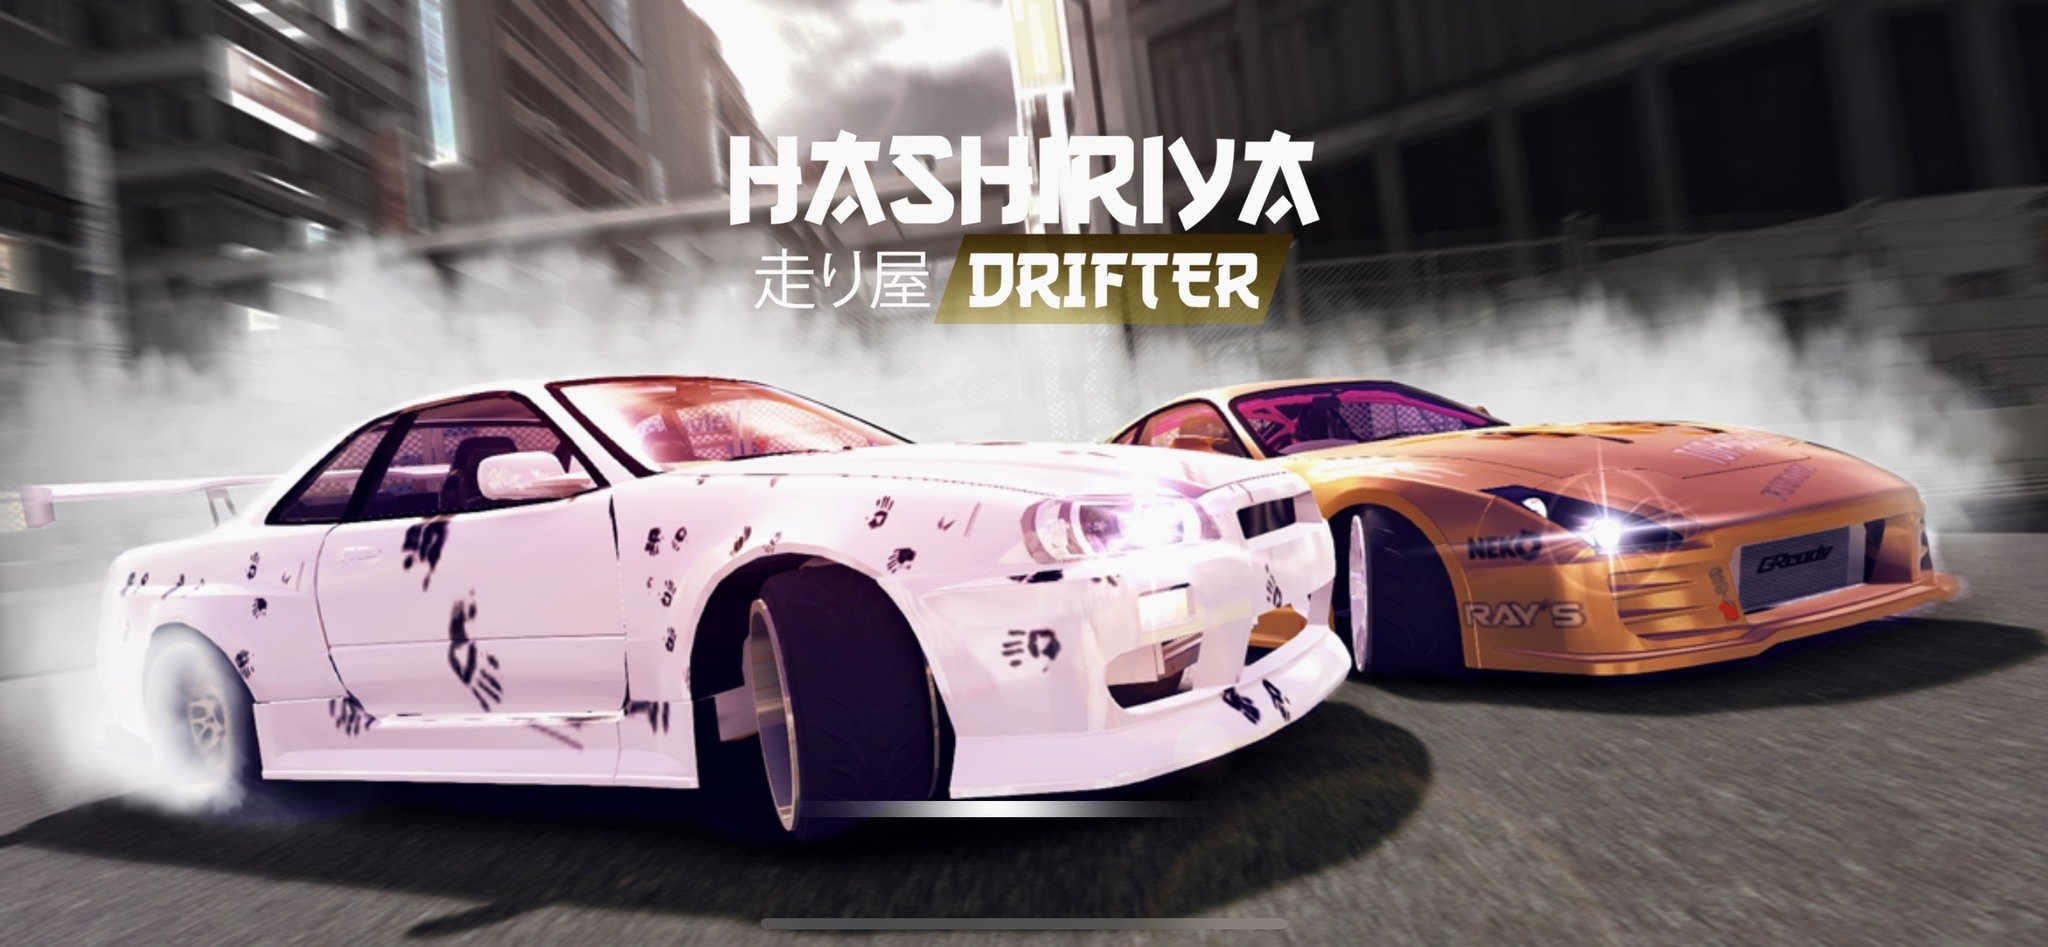 Hashiriya Drifter Title Screen